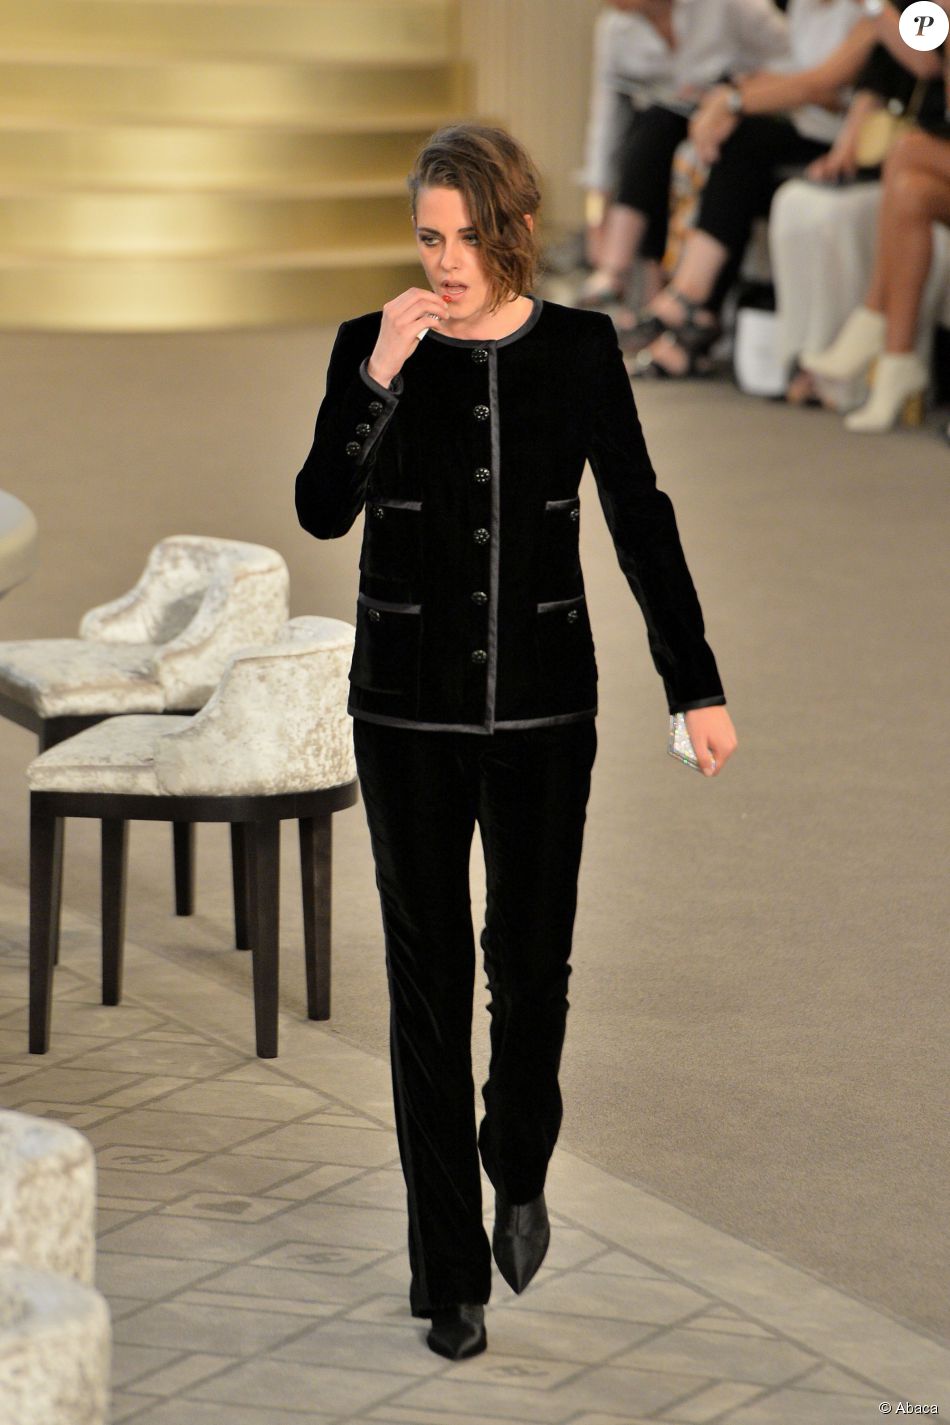 Kristen Stewart participe au défilé Chanel (collection haute couture automne-hiver 2015-2016) au Grand Palais. Paris, le 7 juillet 2015.